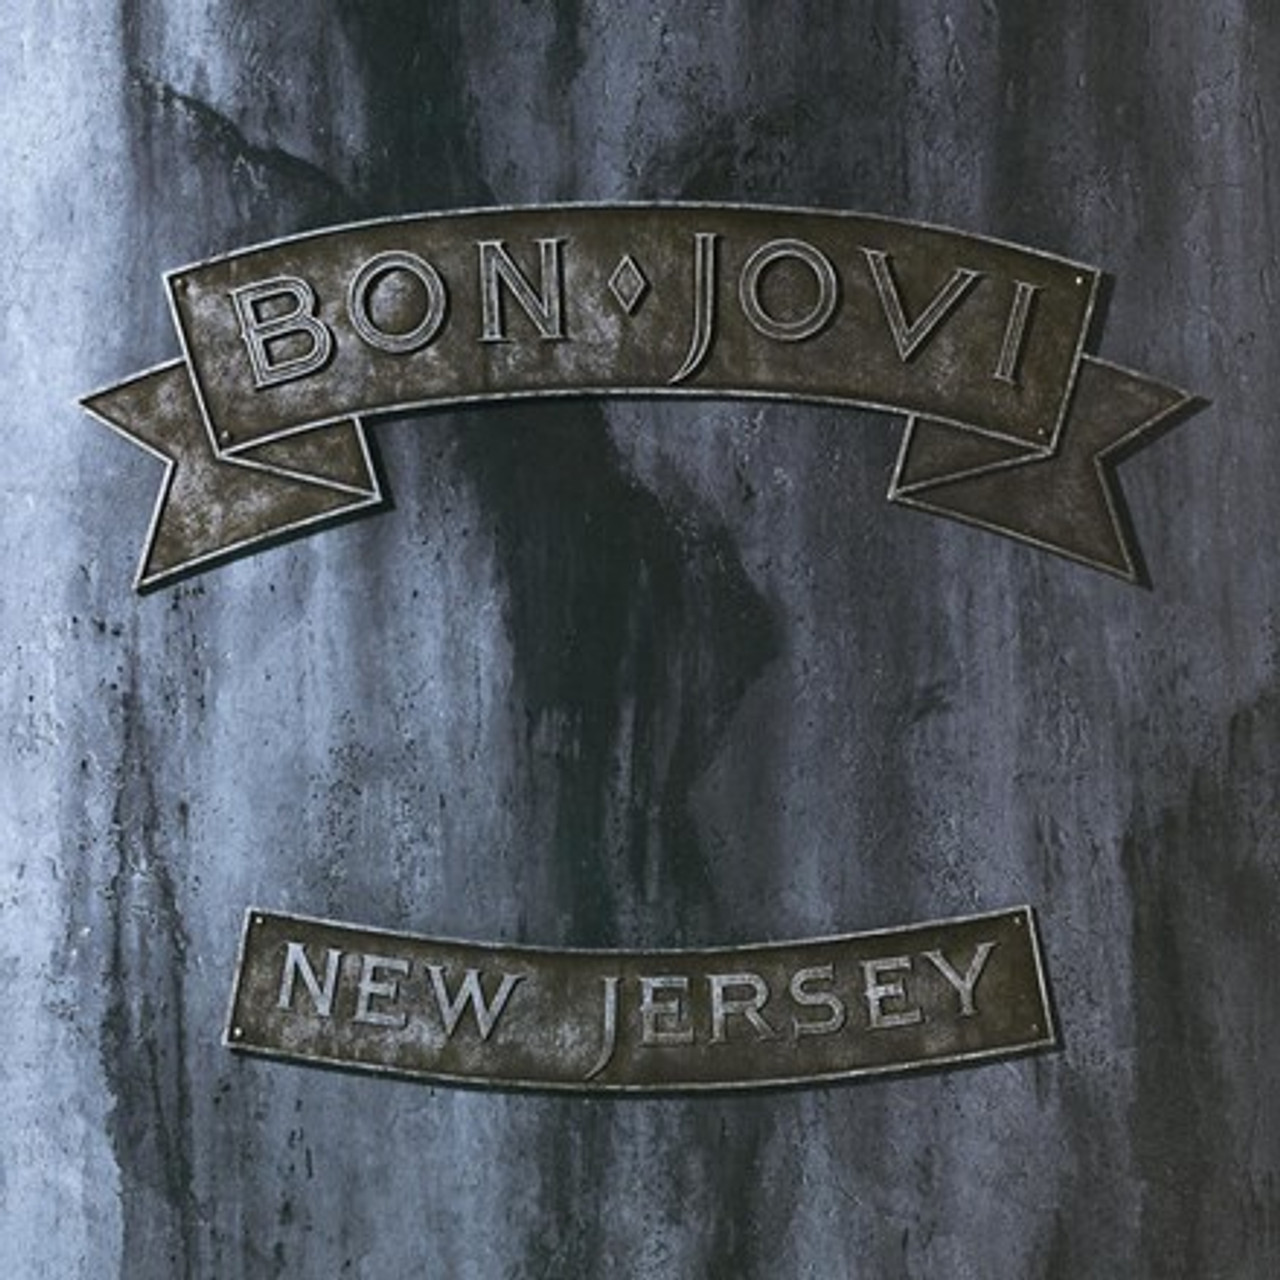 BON JOVI NEW JERSEY バンドスコア-connectedremag.com